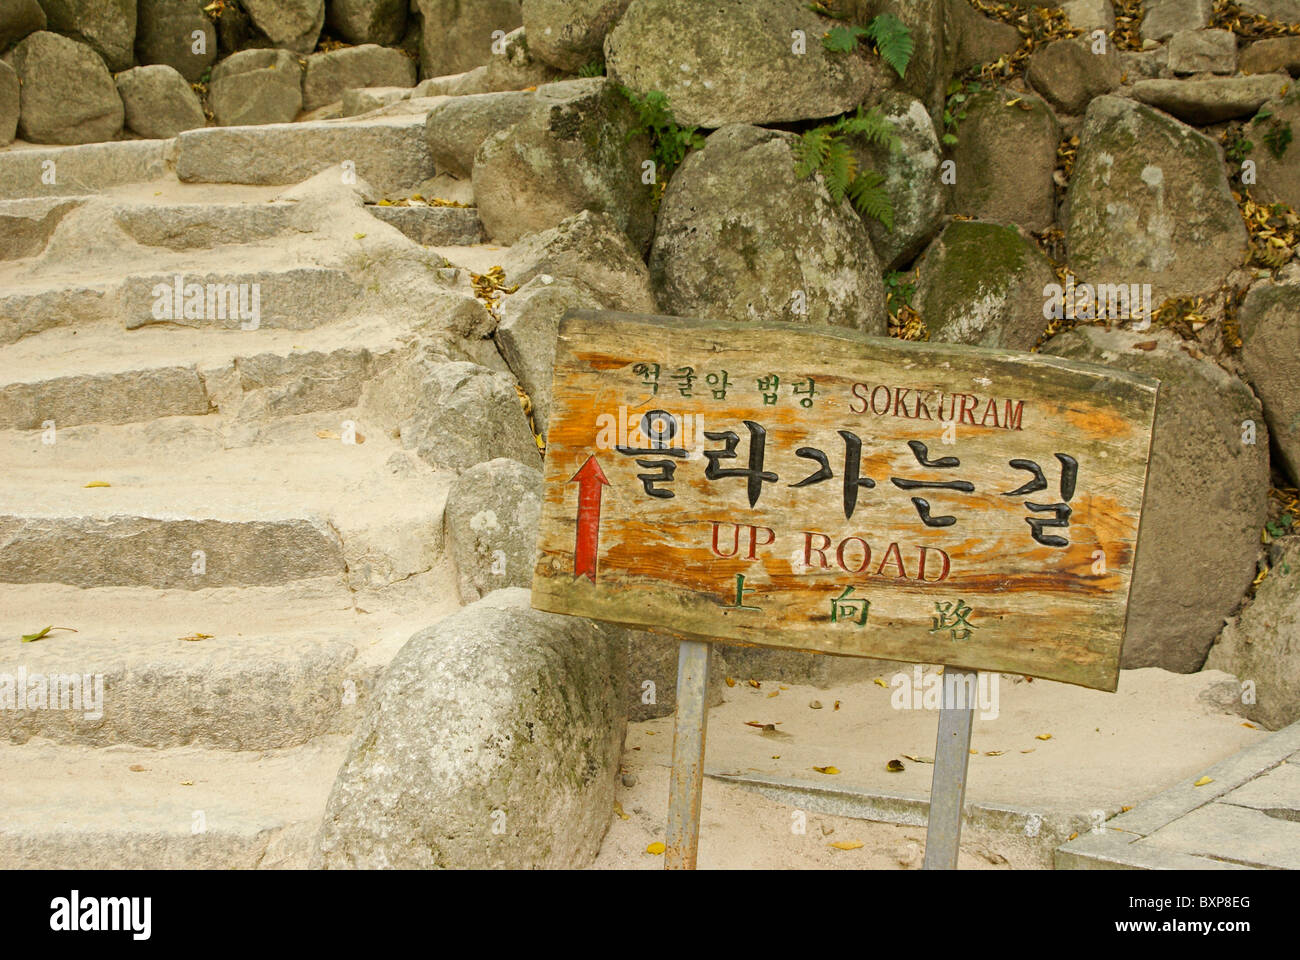 Eine Alte bemalte Holz Schild in drei Sprachen (Englisch, Chinesisch, Koreanisch) weist den Weg zu Seokguram Grotte (Sokkuram), Südkorea Stockfoto